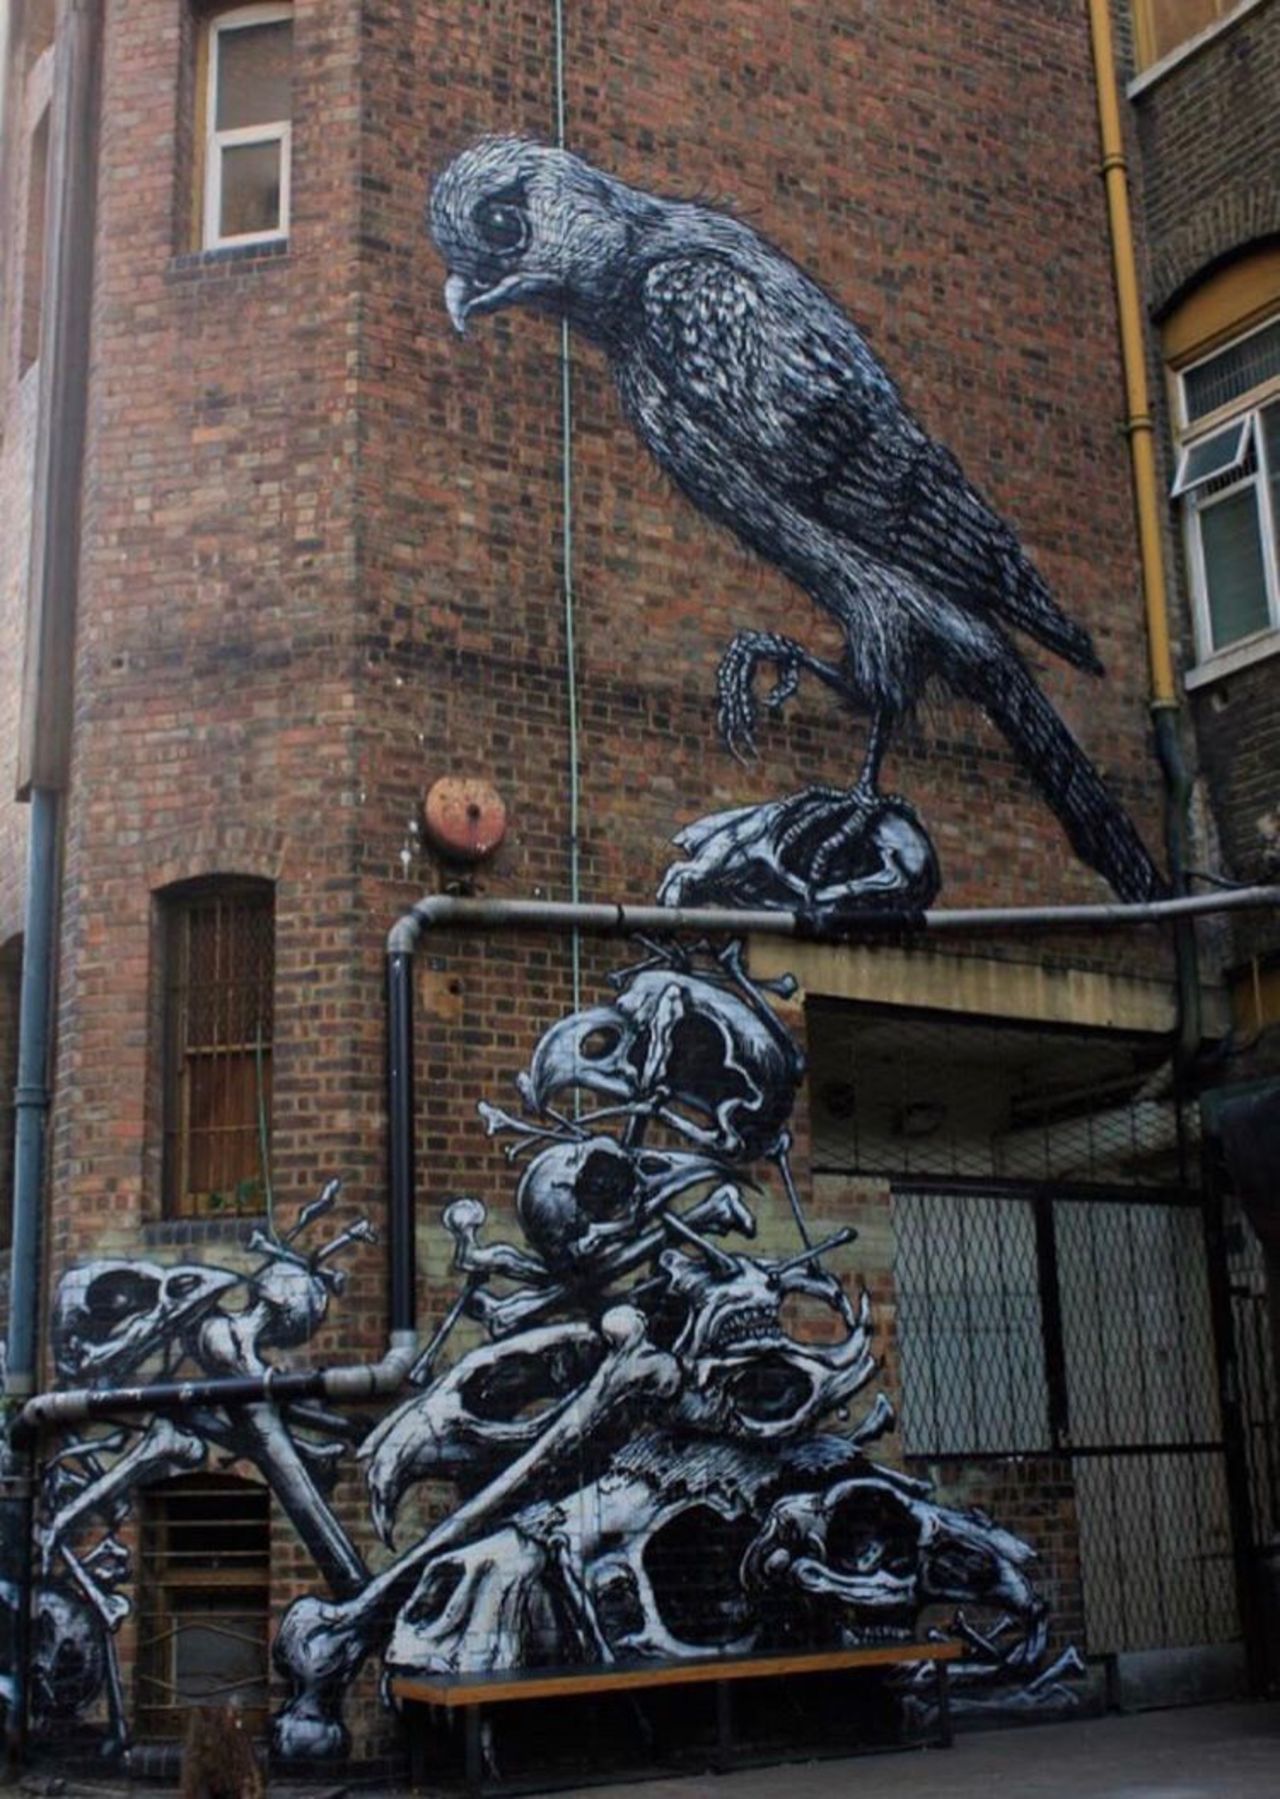 New work by ROA in London, UK #streetart #mural #graffiti #art https://t.co/vTklkFzimH